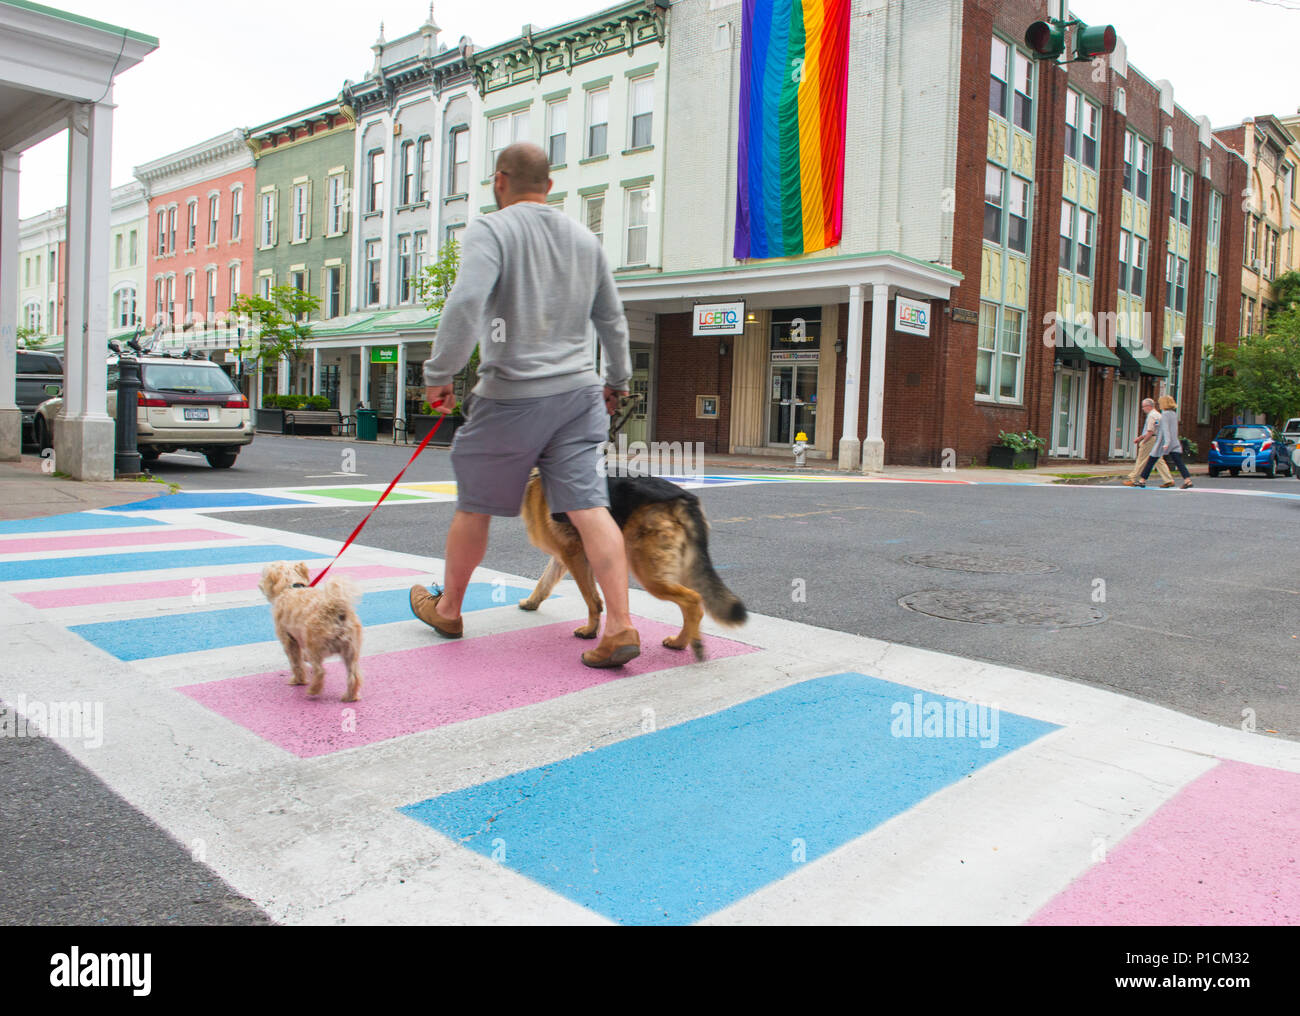 Un hombre camina sus perros, fuera de la comunidad LGBTQ de Hudson Valley Center en Kingston, Nueva York, Los pasos peatonales están pintados con los colores de la bandera del orgullo gay y transgénero, y la bandera del orgullo gay original ocho colores deportivos vuela fuera de la sede Foto de stock